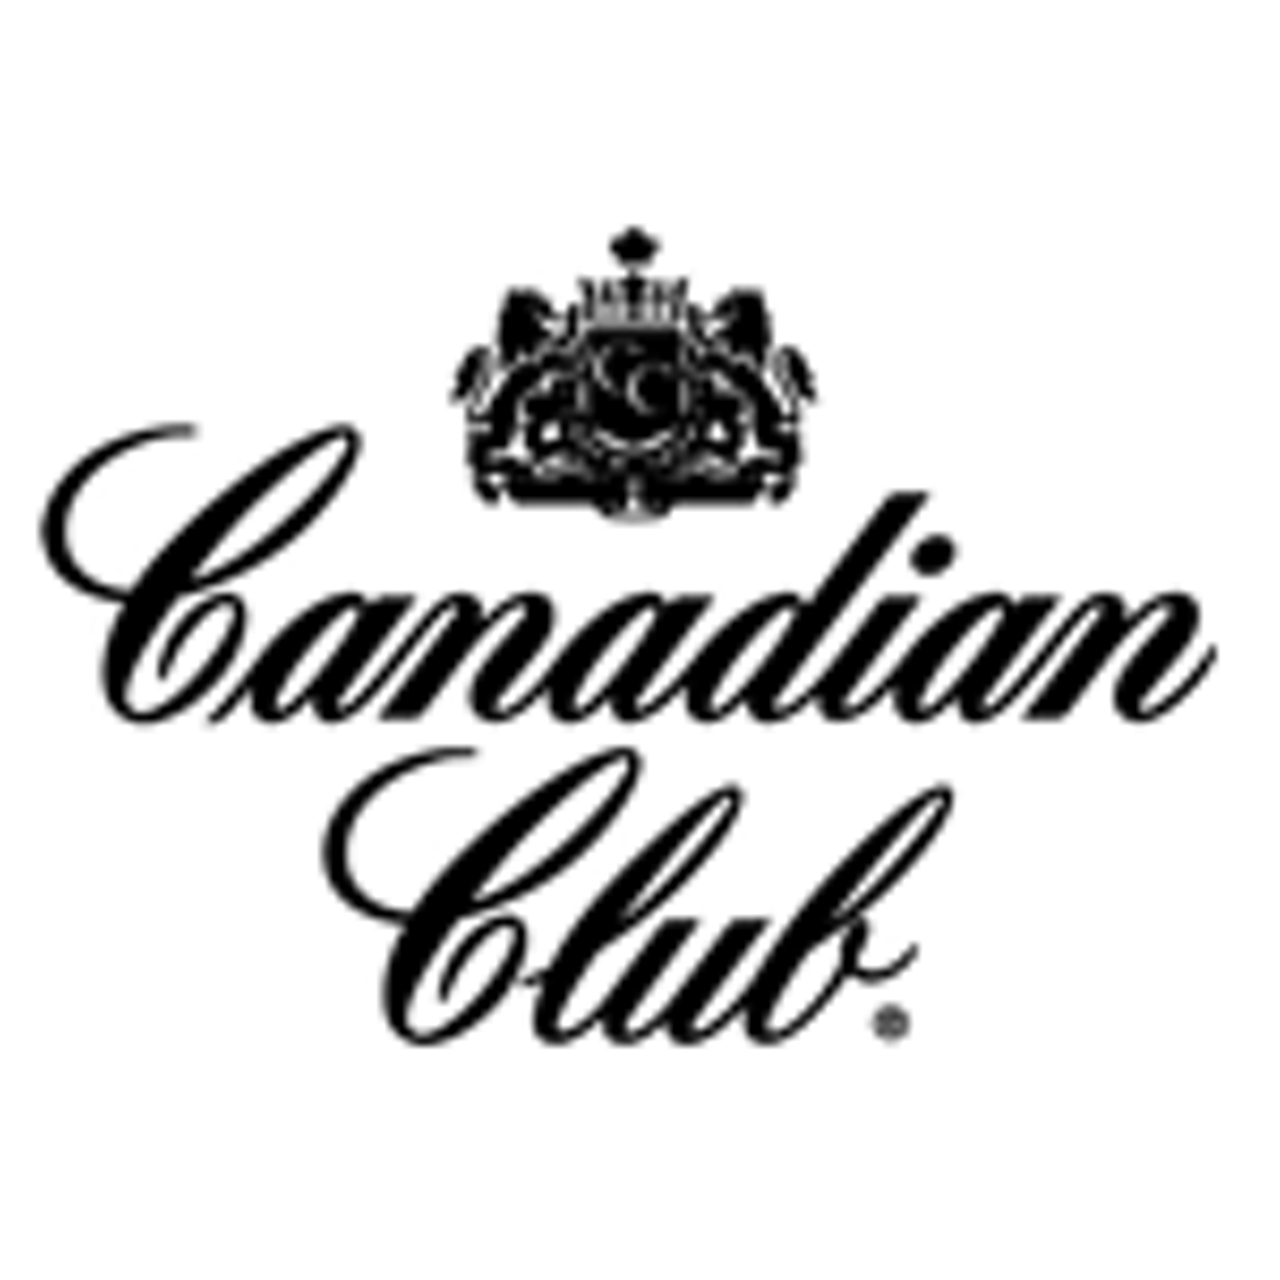 Canadian Club Promo